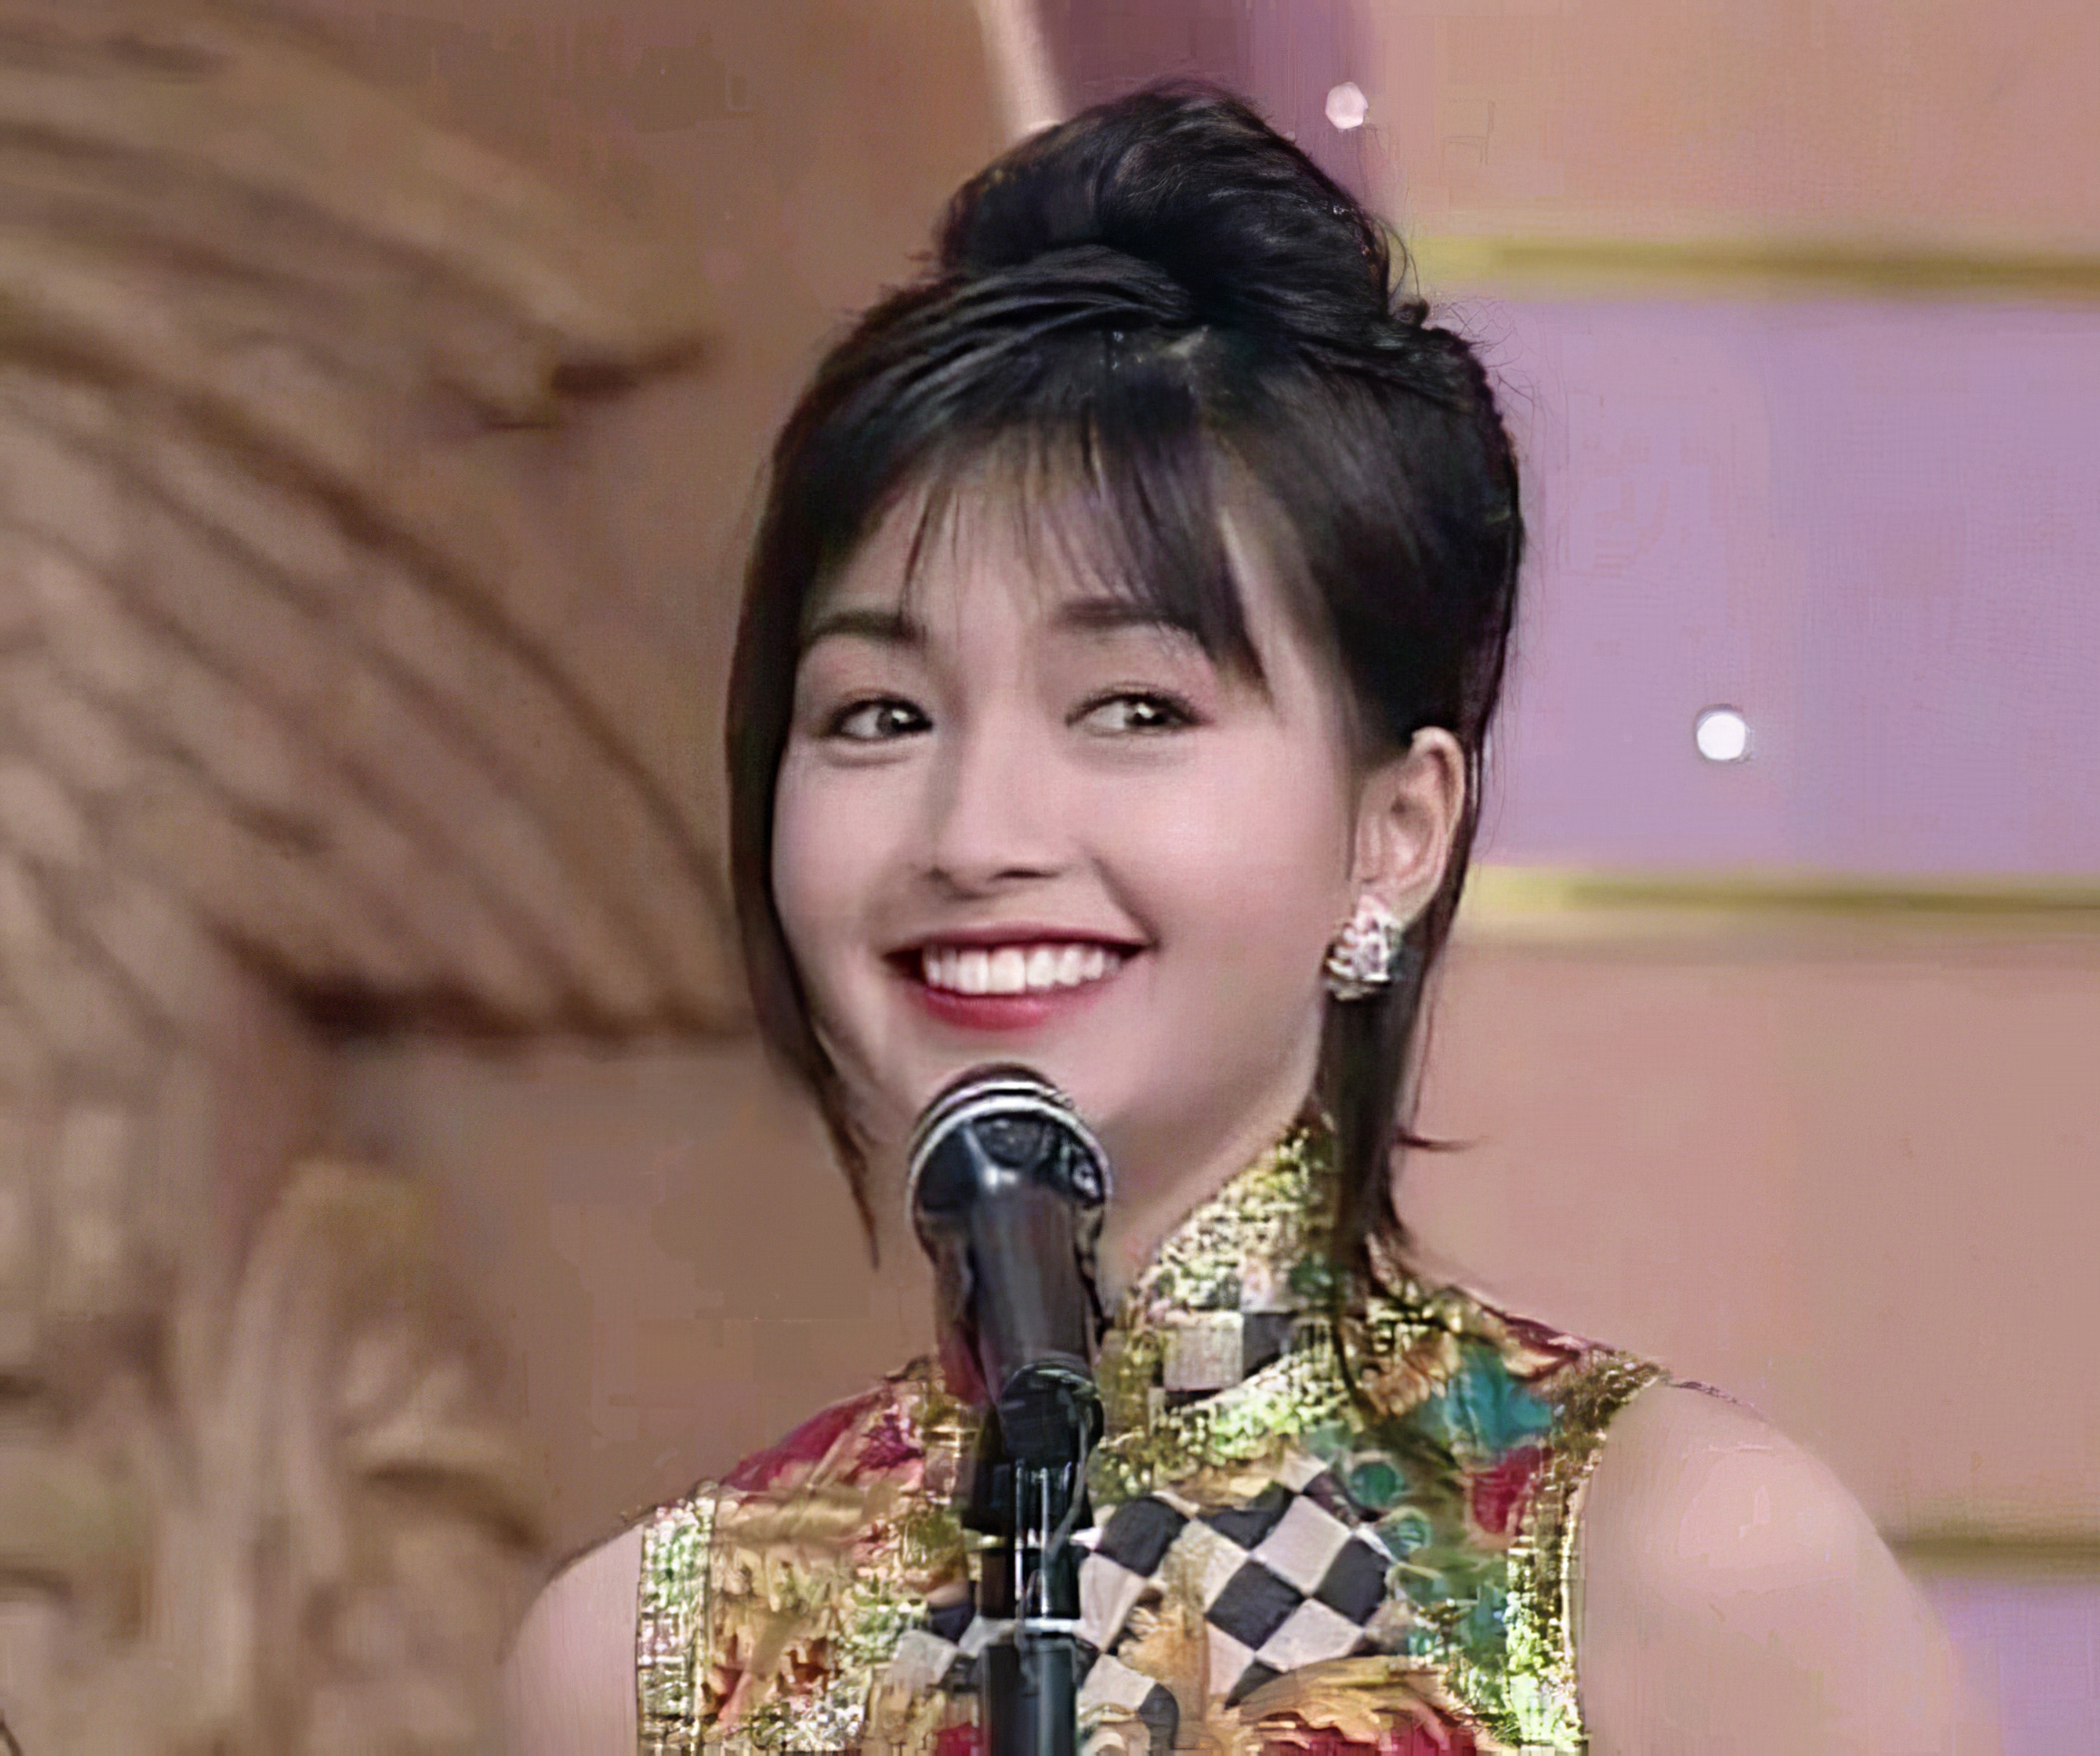 1994年,她参加香港小姐竞选获得季军及最受传媒欢迎奖后进入娱乐圈 